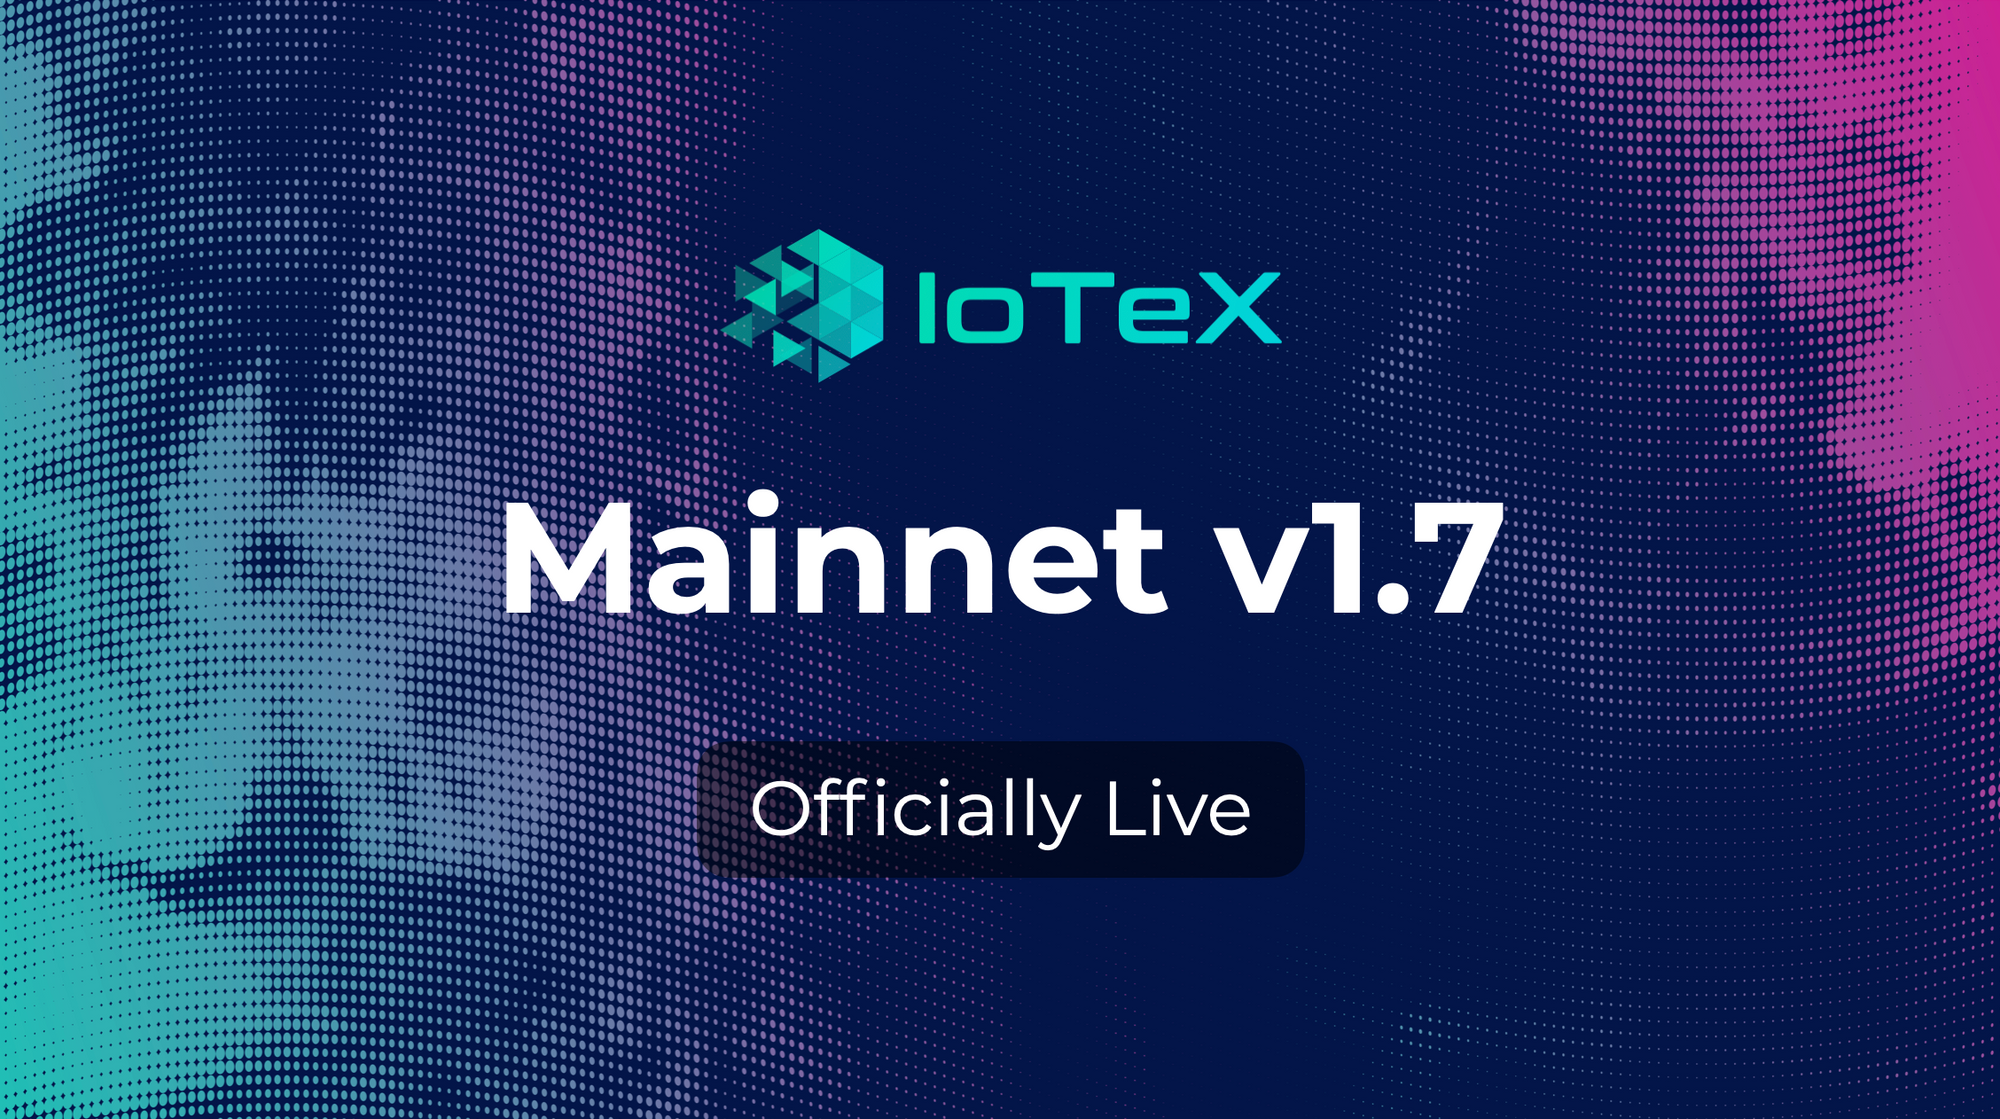 IoTeX Mainnet v1.7 is LIVE!